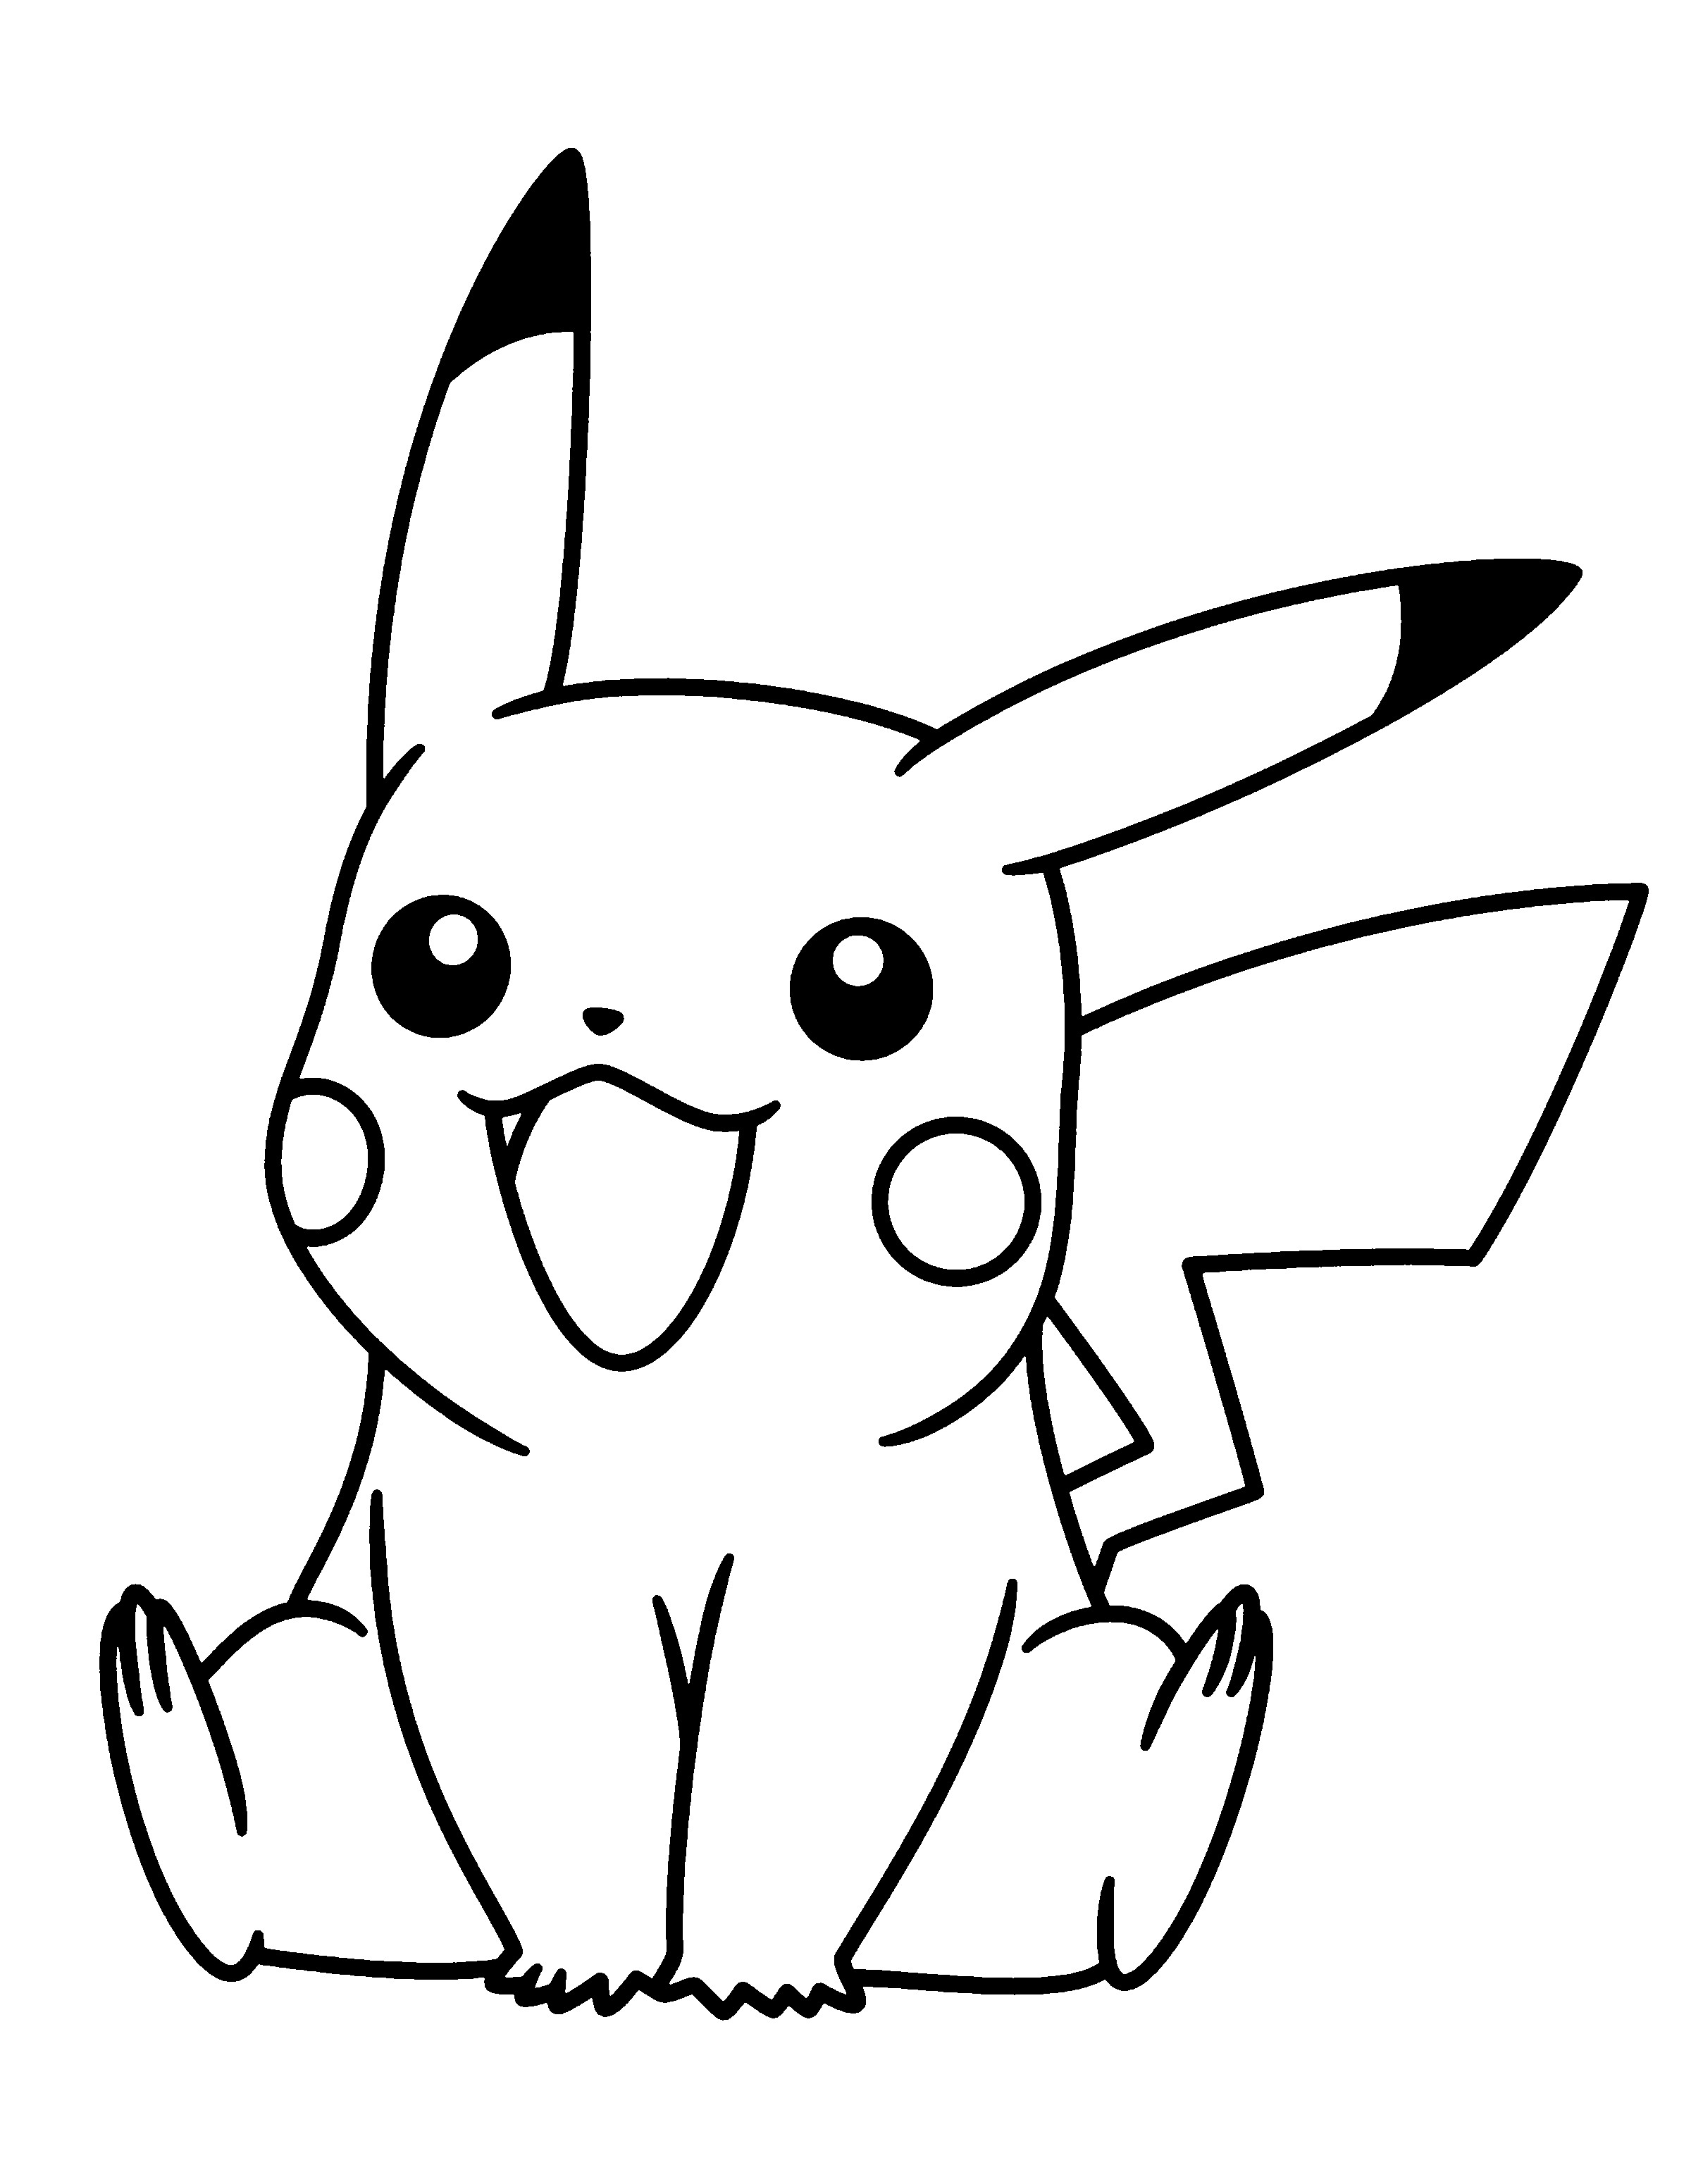 Pikachu Pokemon coloring pagesð¸ð¦ADULT COLORING BOOK PAGESð¦ð More Pins Like This At FOSTERGINGER Pinterest ð¦ð¸ð¦ð